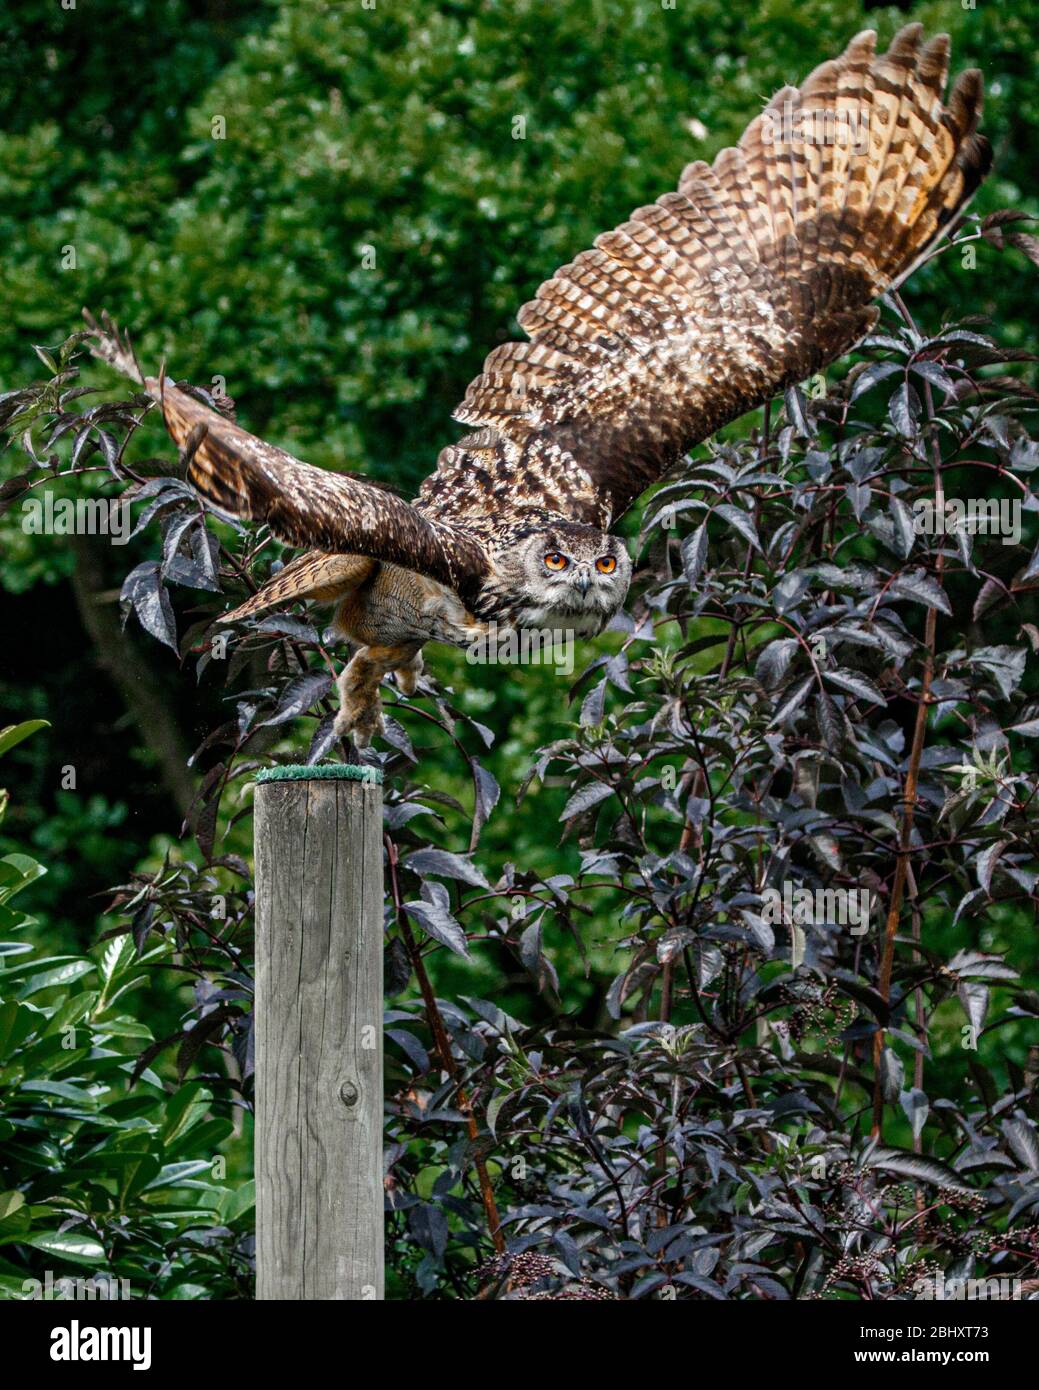 European Eagle Owl flying Stock Photo